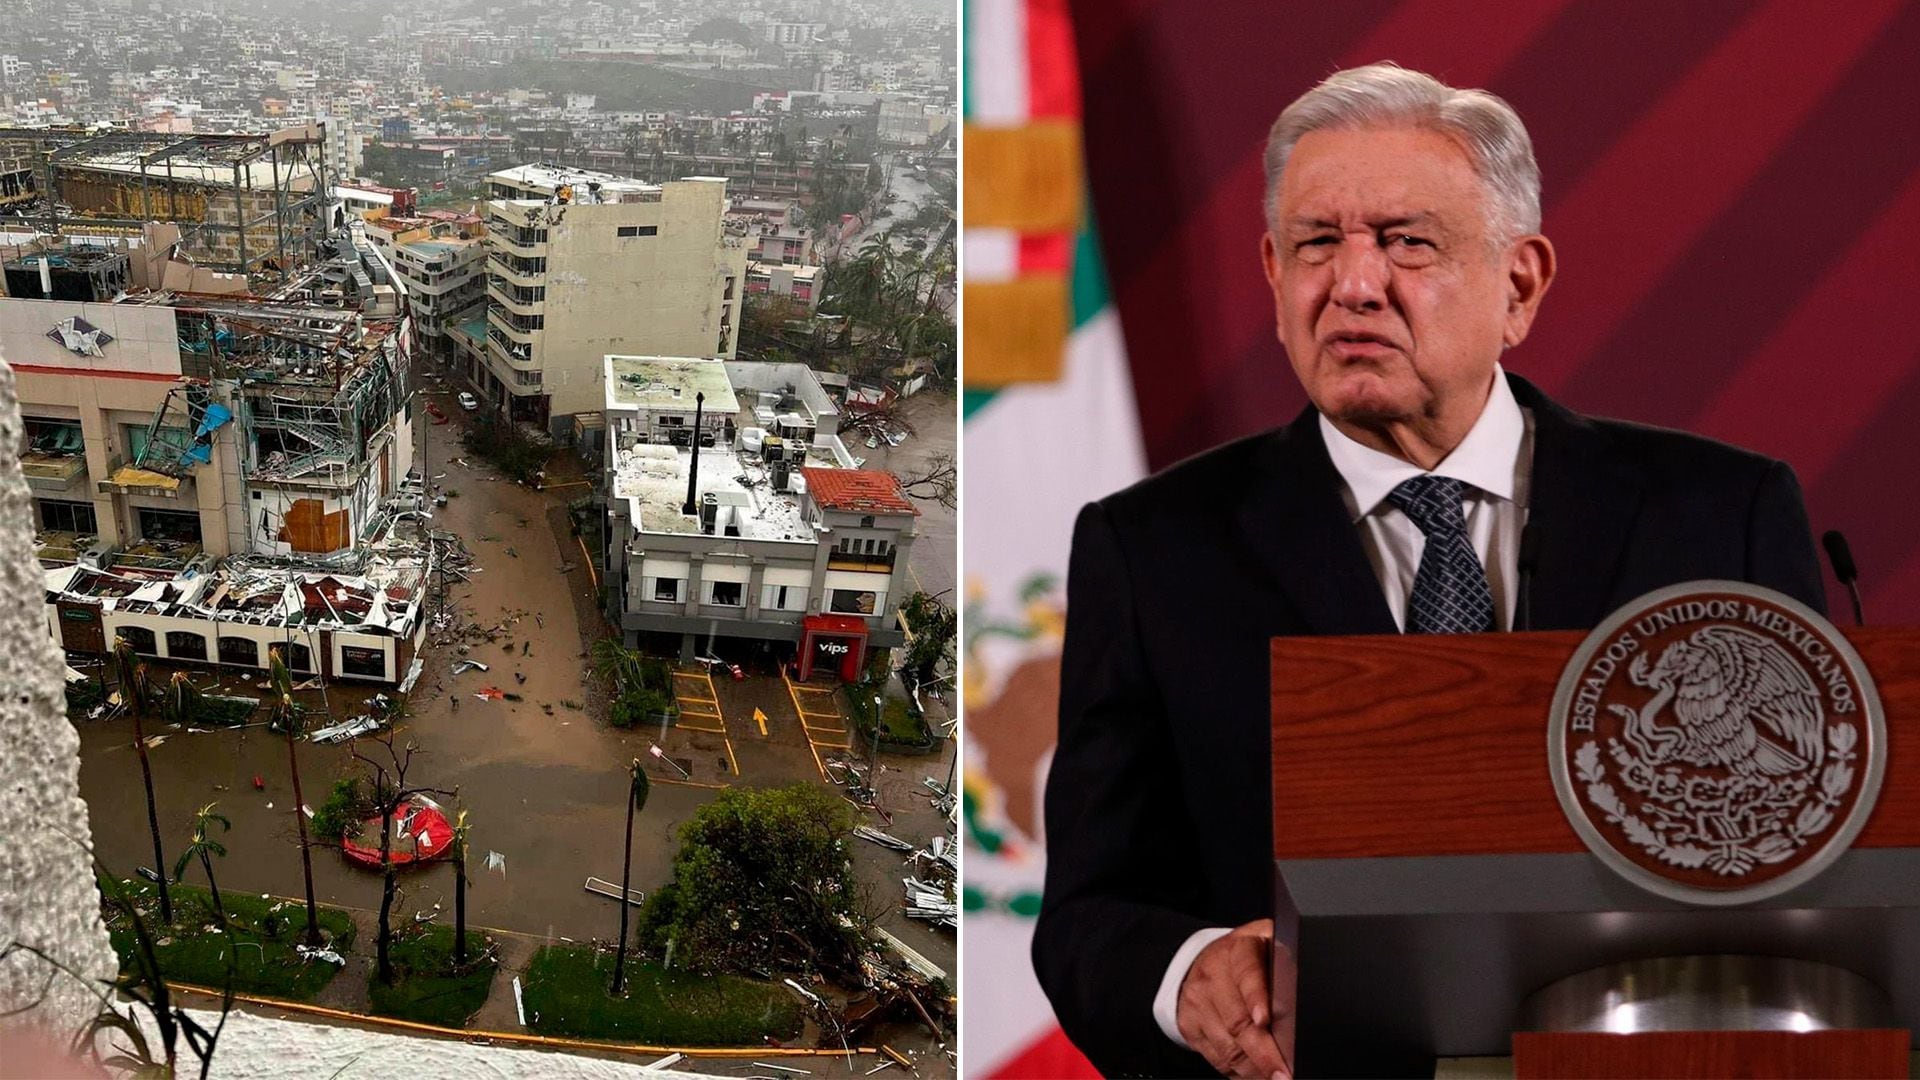 El presidente López Obrador informó que el "impacto de Otis fue muy fuerte". Crédito: Cuartoscuro